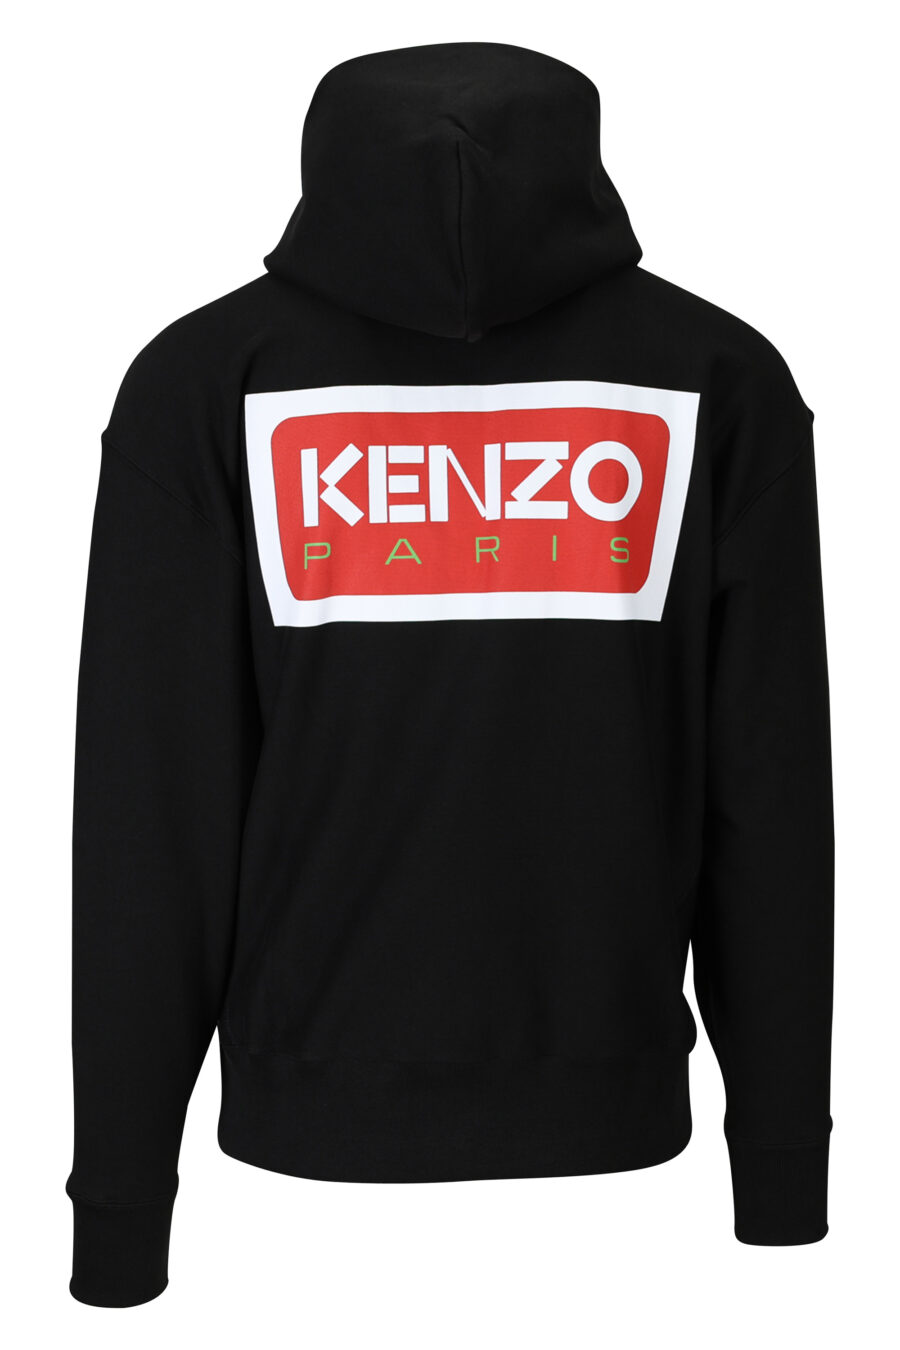 Schwarzes Oversize-Sweatshirt mit Kapuze und Reißverschluss und "kenzo paris"-Logo - 3612230539334 1